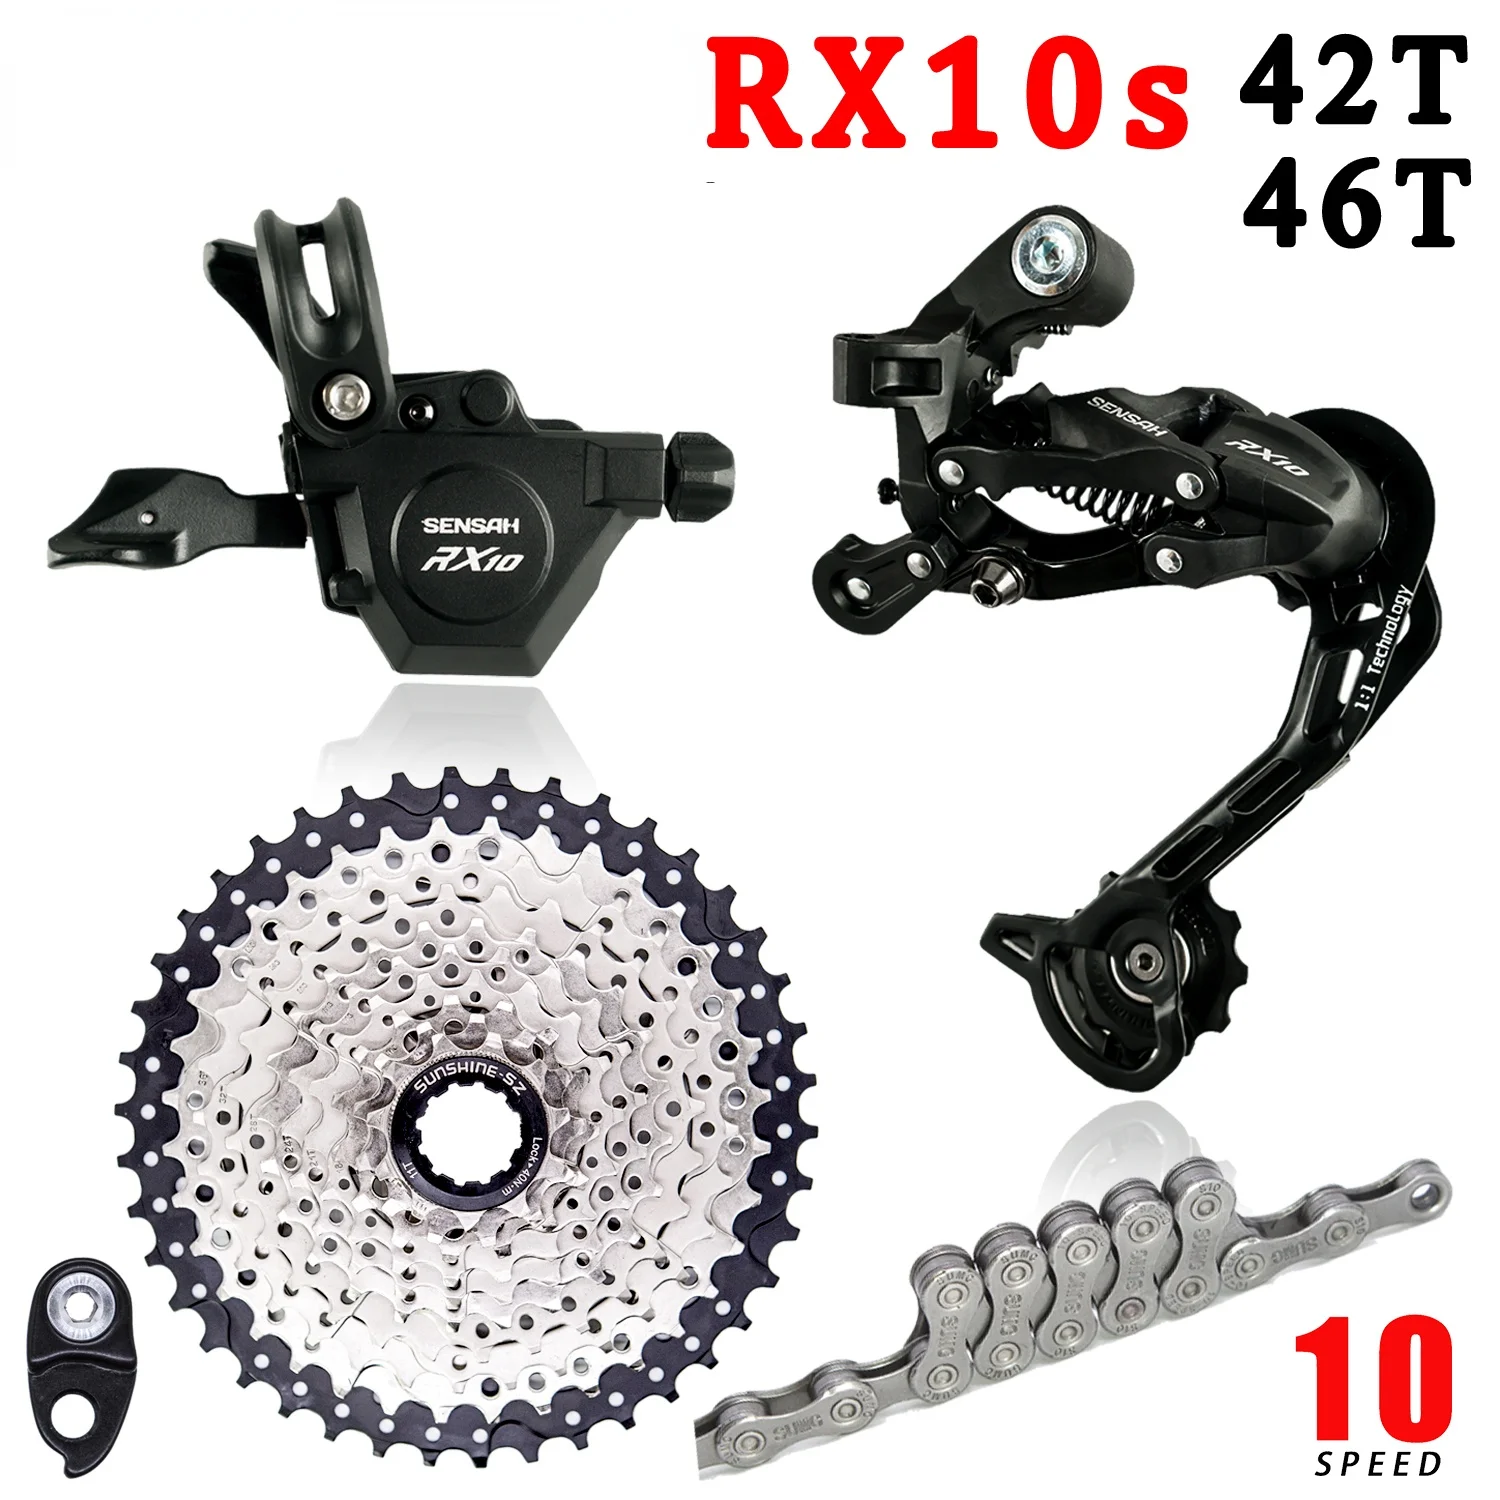 

RX10 1x1 0 скоростные переключатели передач для велосипеда MTB 42T / 46T 10V K7 кассета с цепью A5 A7 велосипедный групповой набор SHIMANO Deore M6000